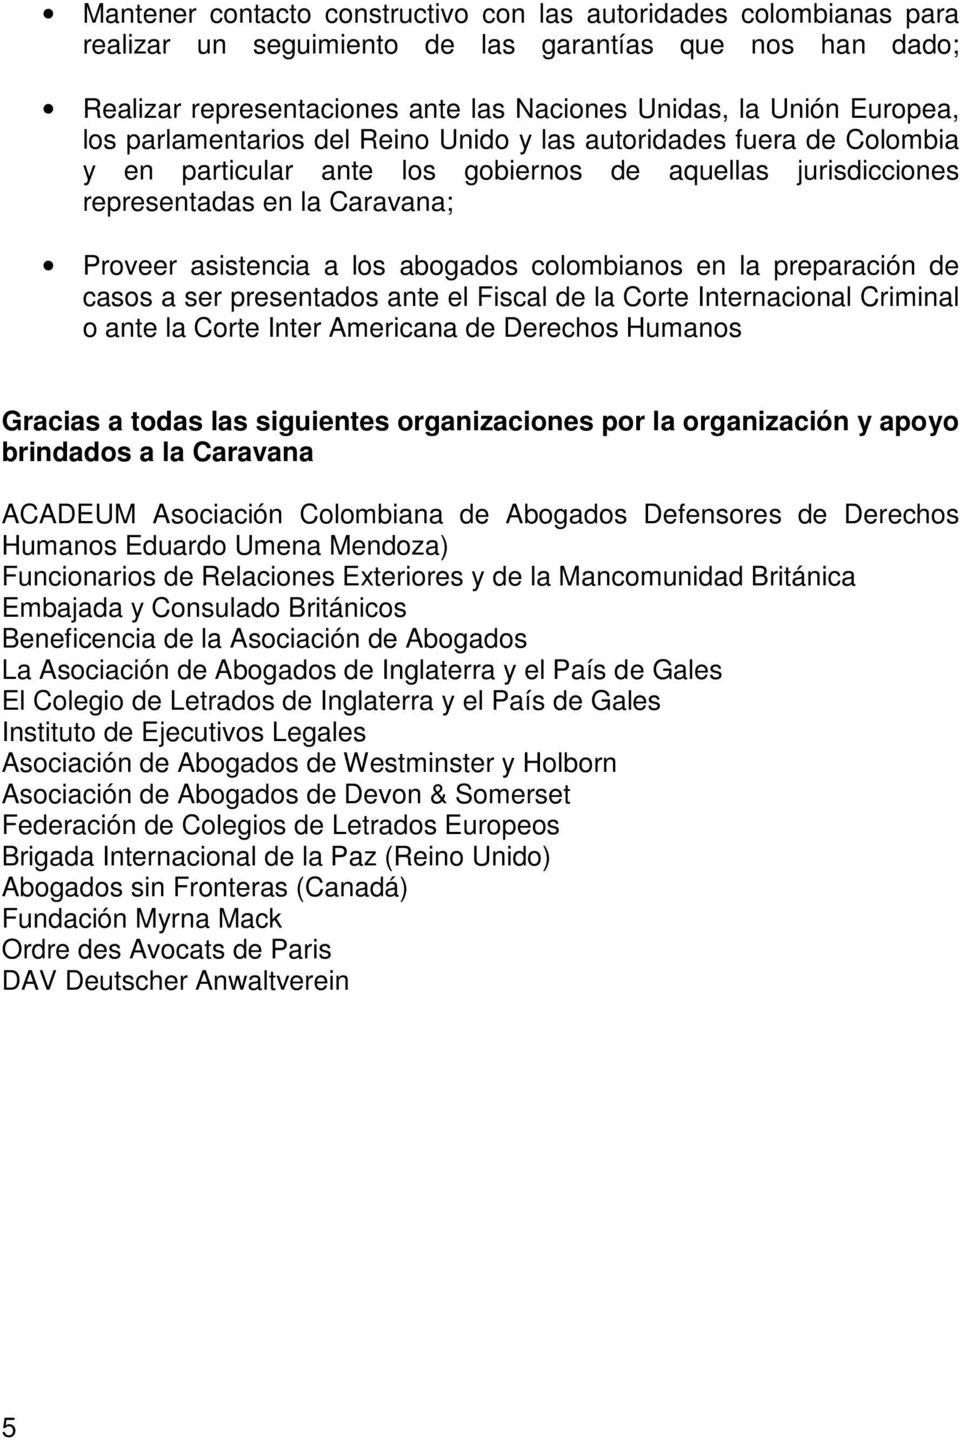 colombianos en la preparación de casos a ser presentados ante el Fiscal de la Corte Internacional Criminal o ante la Corte Inter Americana de Derechos Humanos Gracias a todas las siguientes